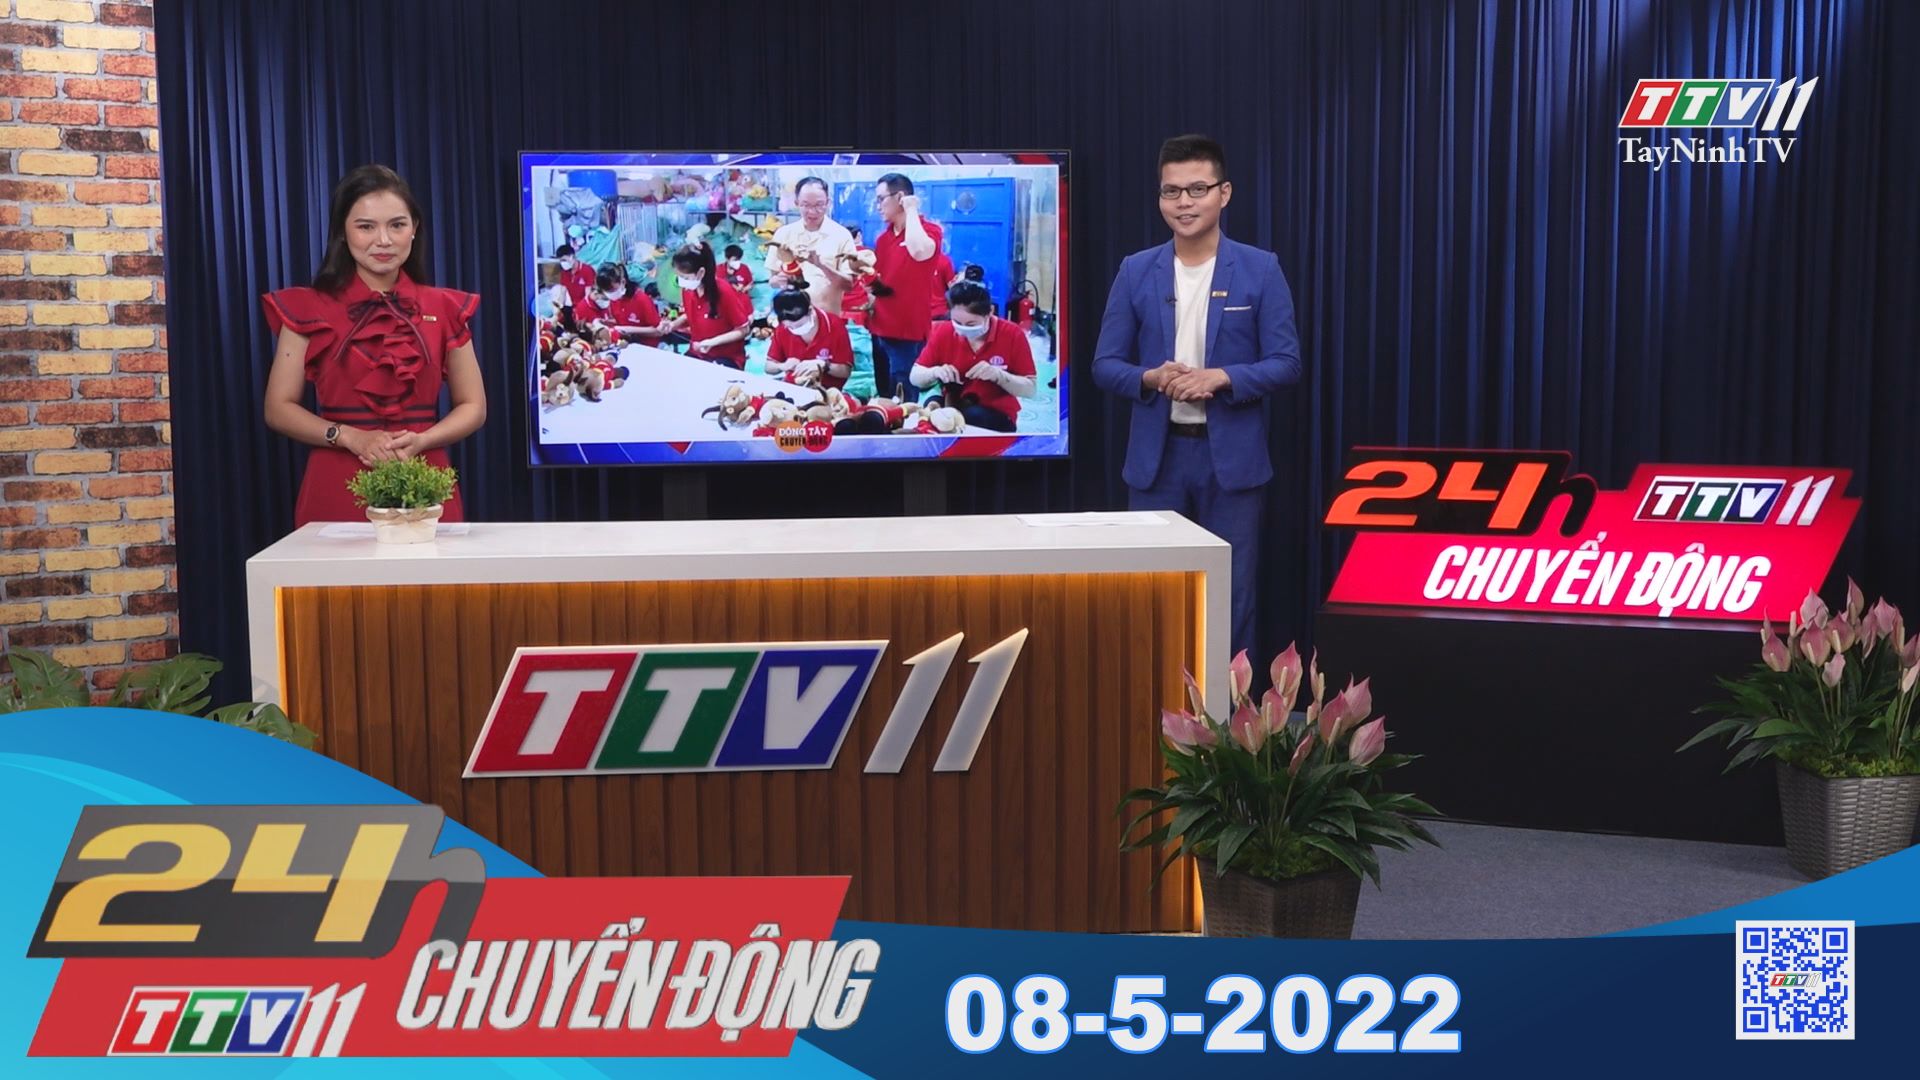 24h Chuyển động 08-5-2022 | Tin tức hôm nay | TayNinhTV